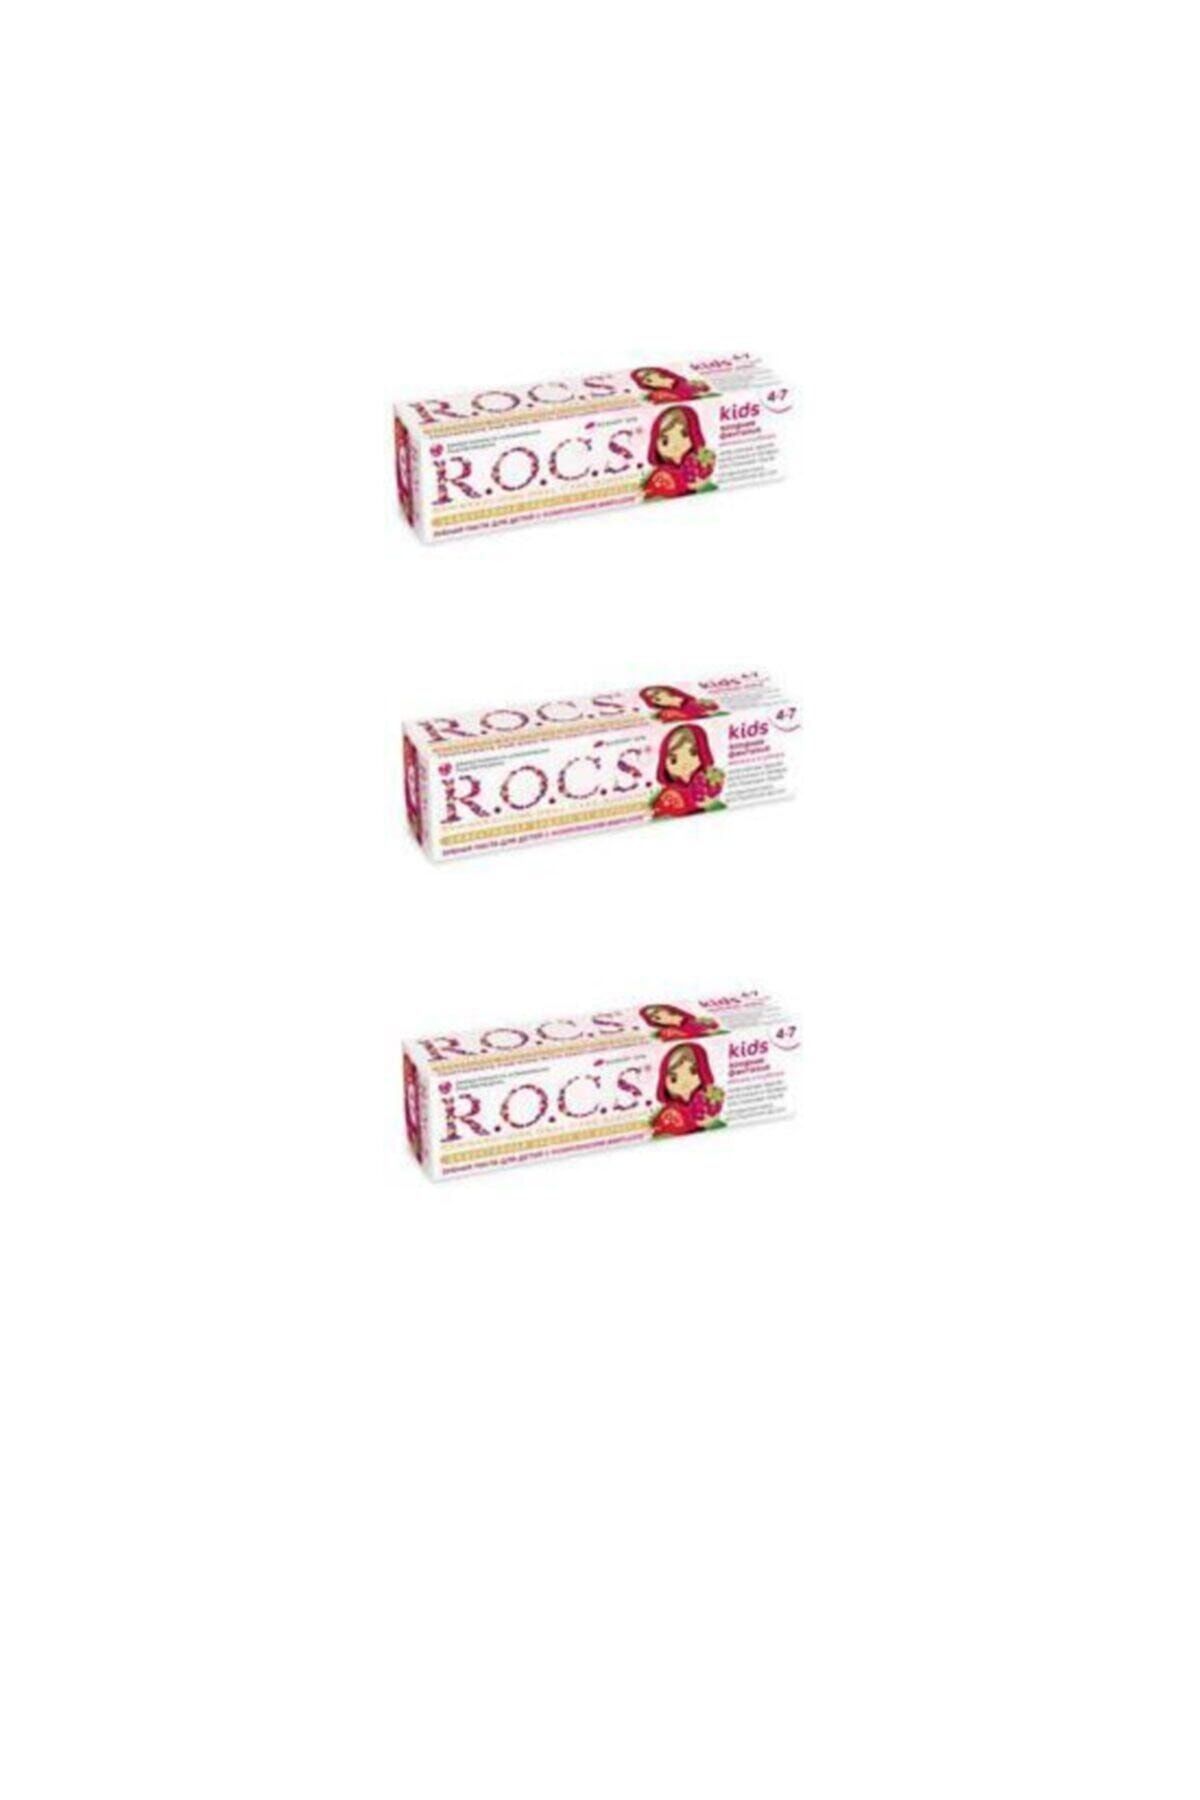 R.O.C.S. Rocs Kids 4-7 Yaş Çocuk Diş Macunu Yaz Esintisi Ahududu Çilek Tadı 35ml X 3 Adet